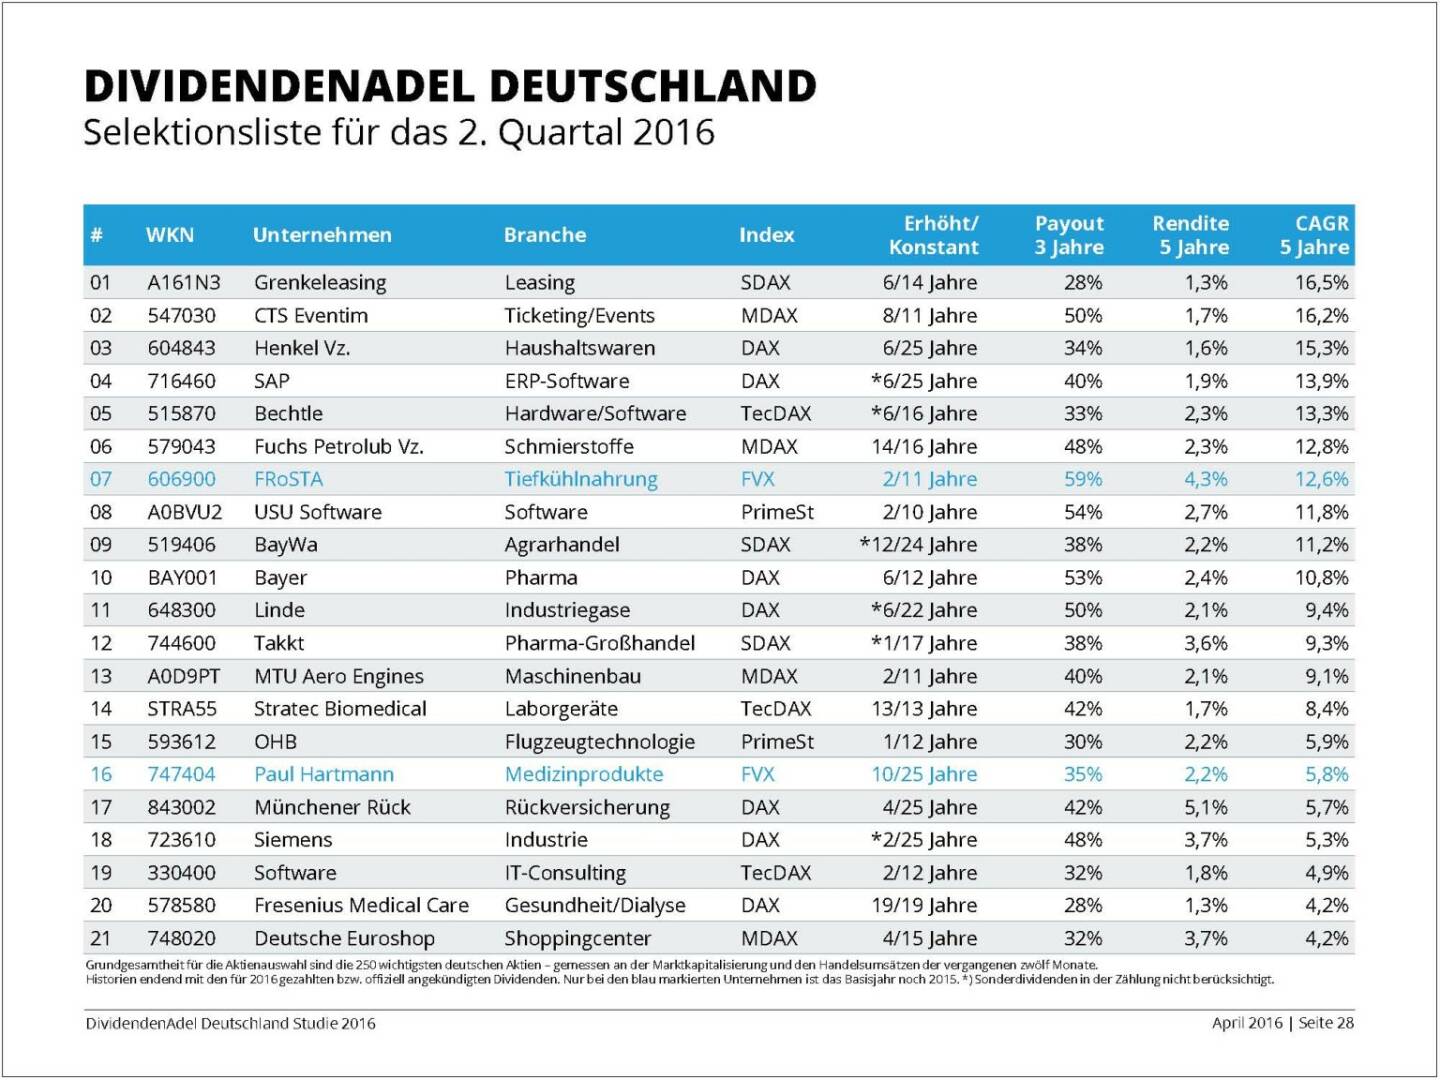 Dividendenstudie 2016: Dividendenadel Deutschland